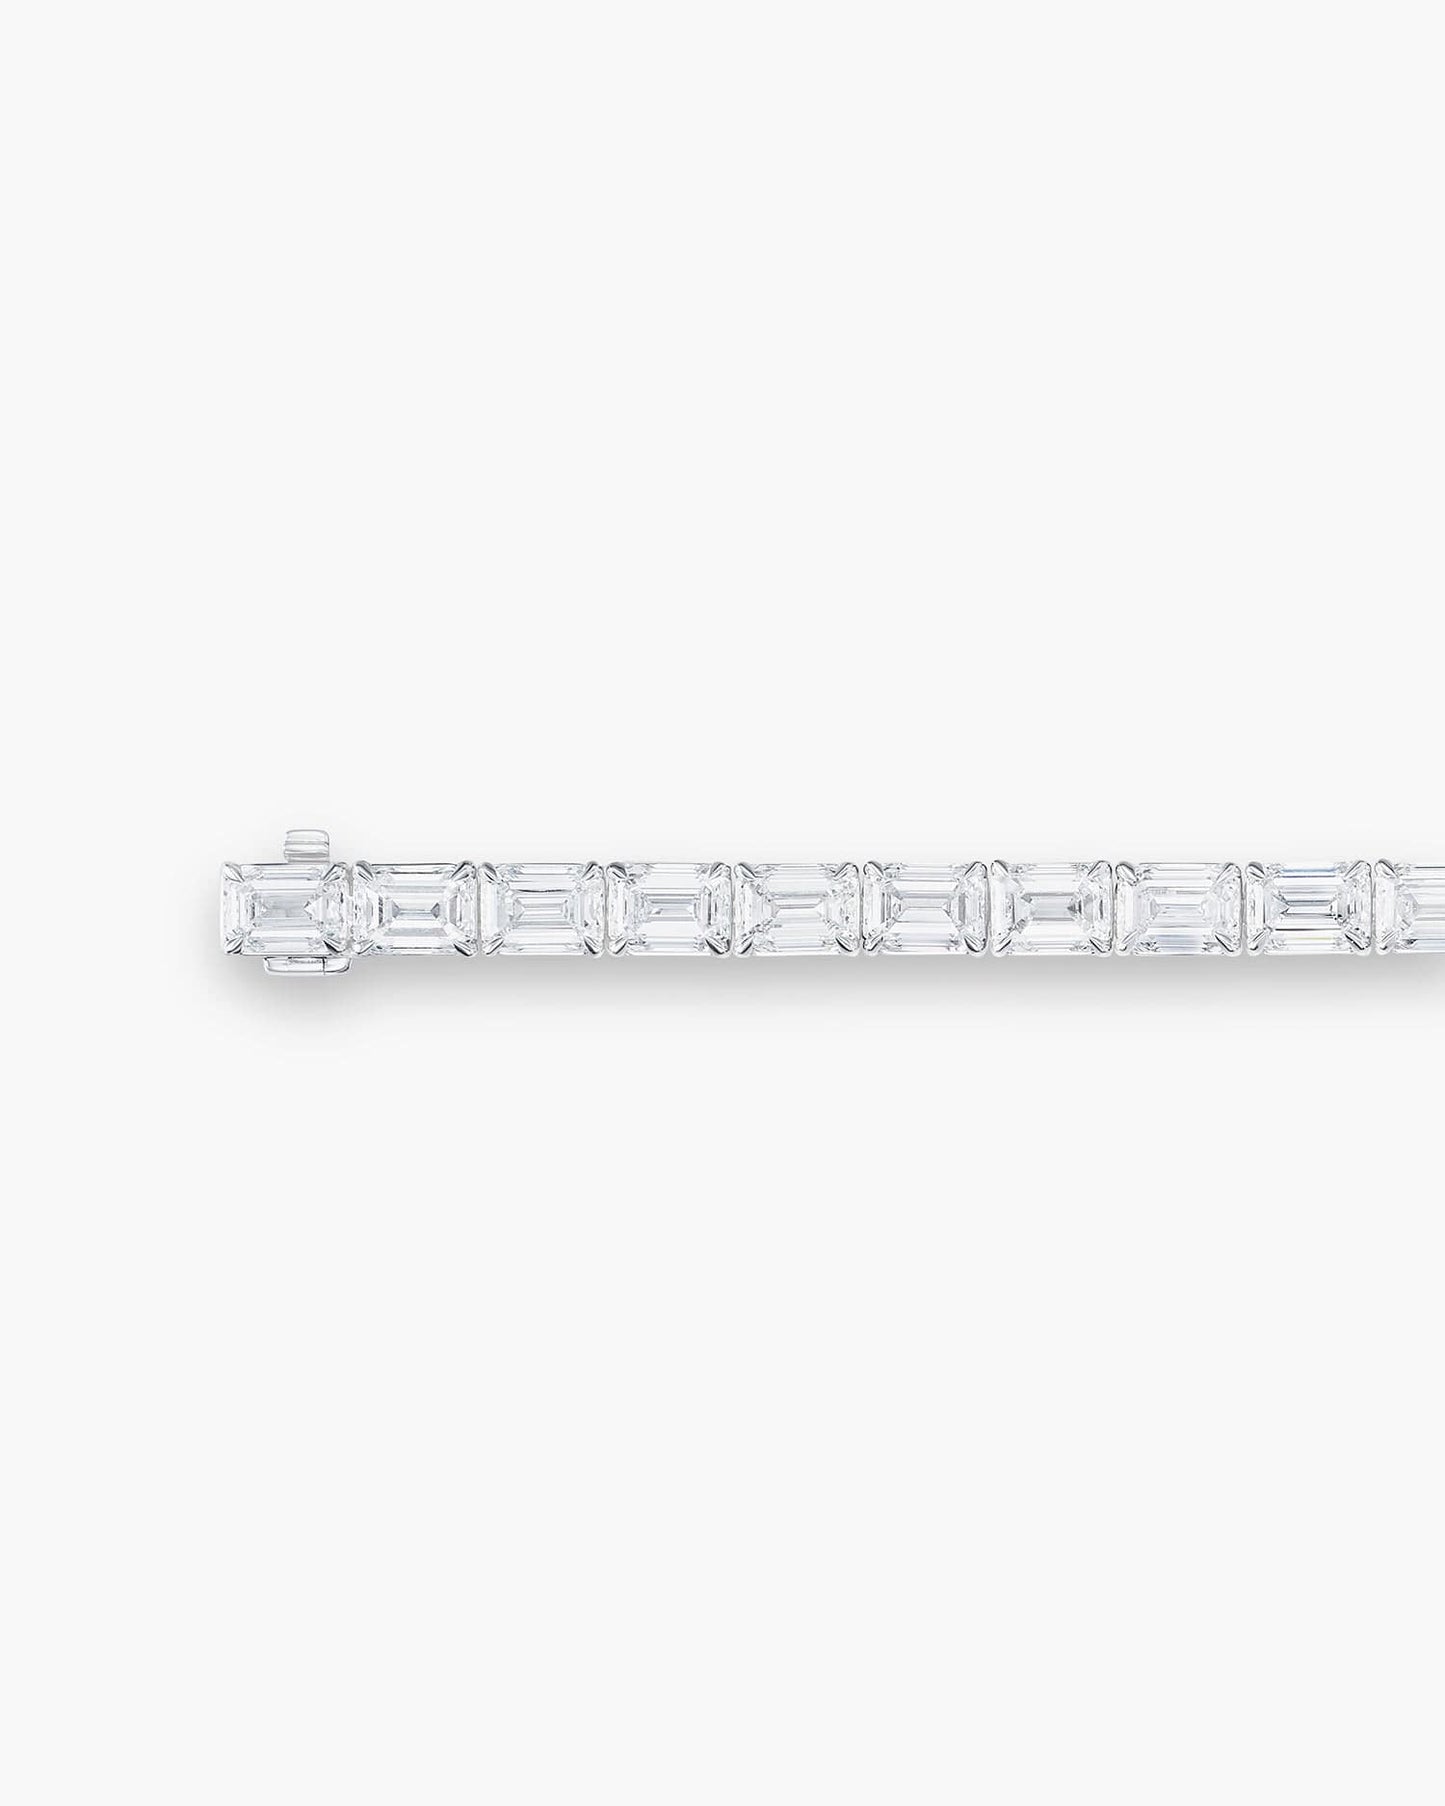 Emerald Cut Diamond Bracelet (0.50 carat)